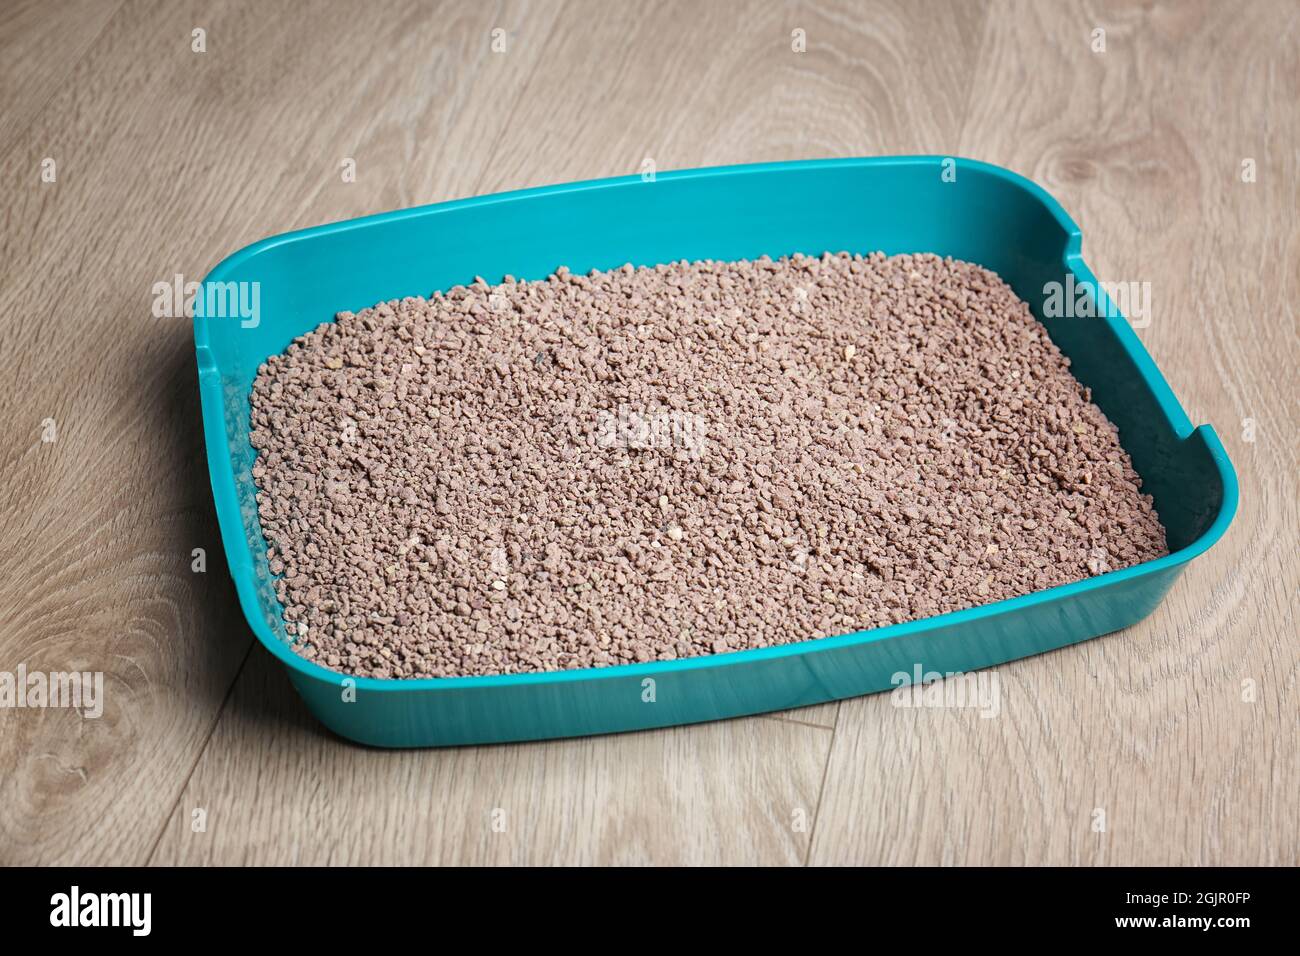 Kunststoff Katzenklo mit Füller auf dem Boden Stockfotografie - Alamy